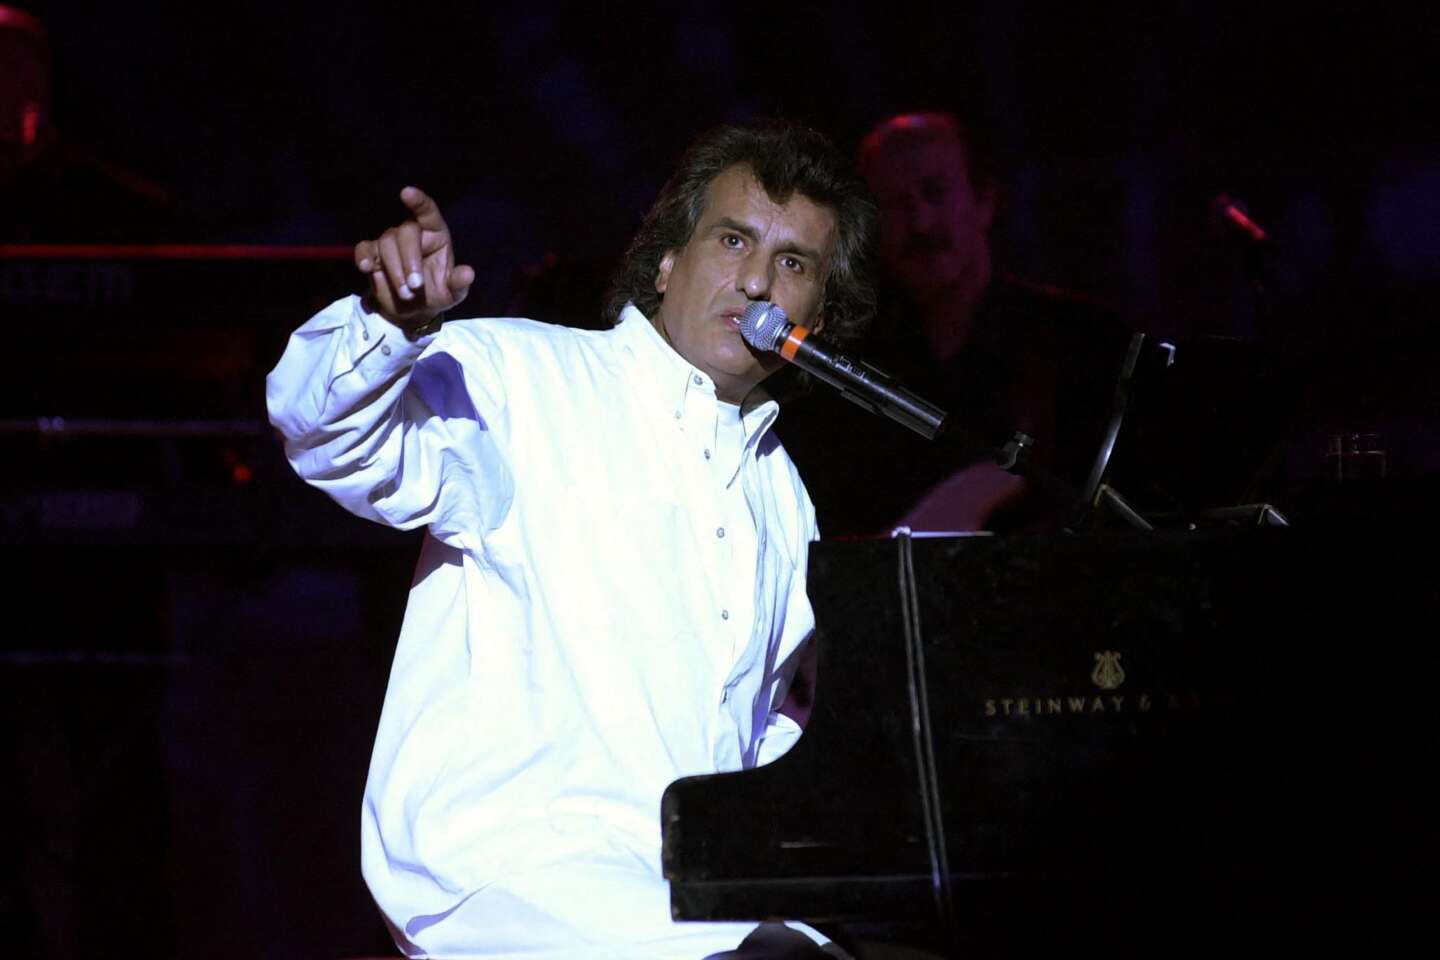 Zmarł Toto Cutugno, gwiazda włoskiej odmiany muzyki i inspiracja wielkich sukcesów francuskiej piosenki